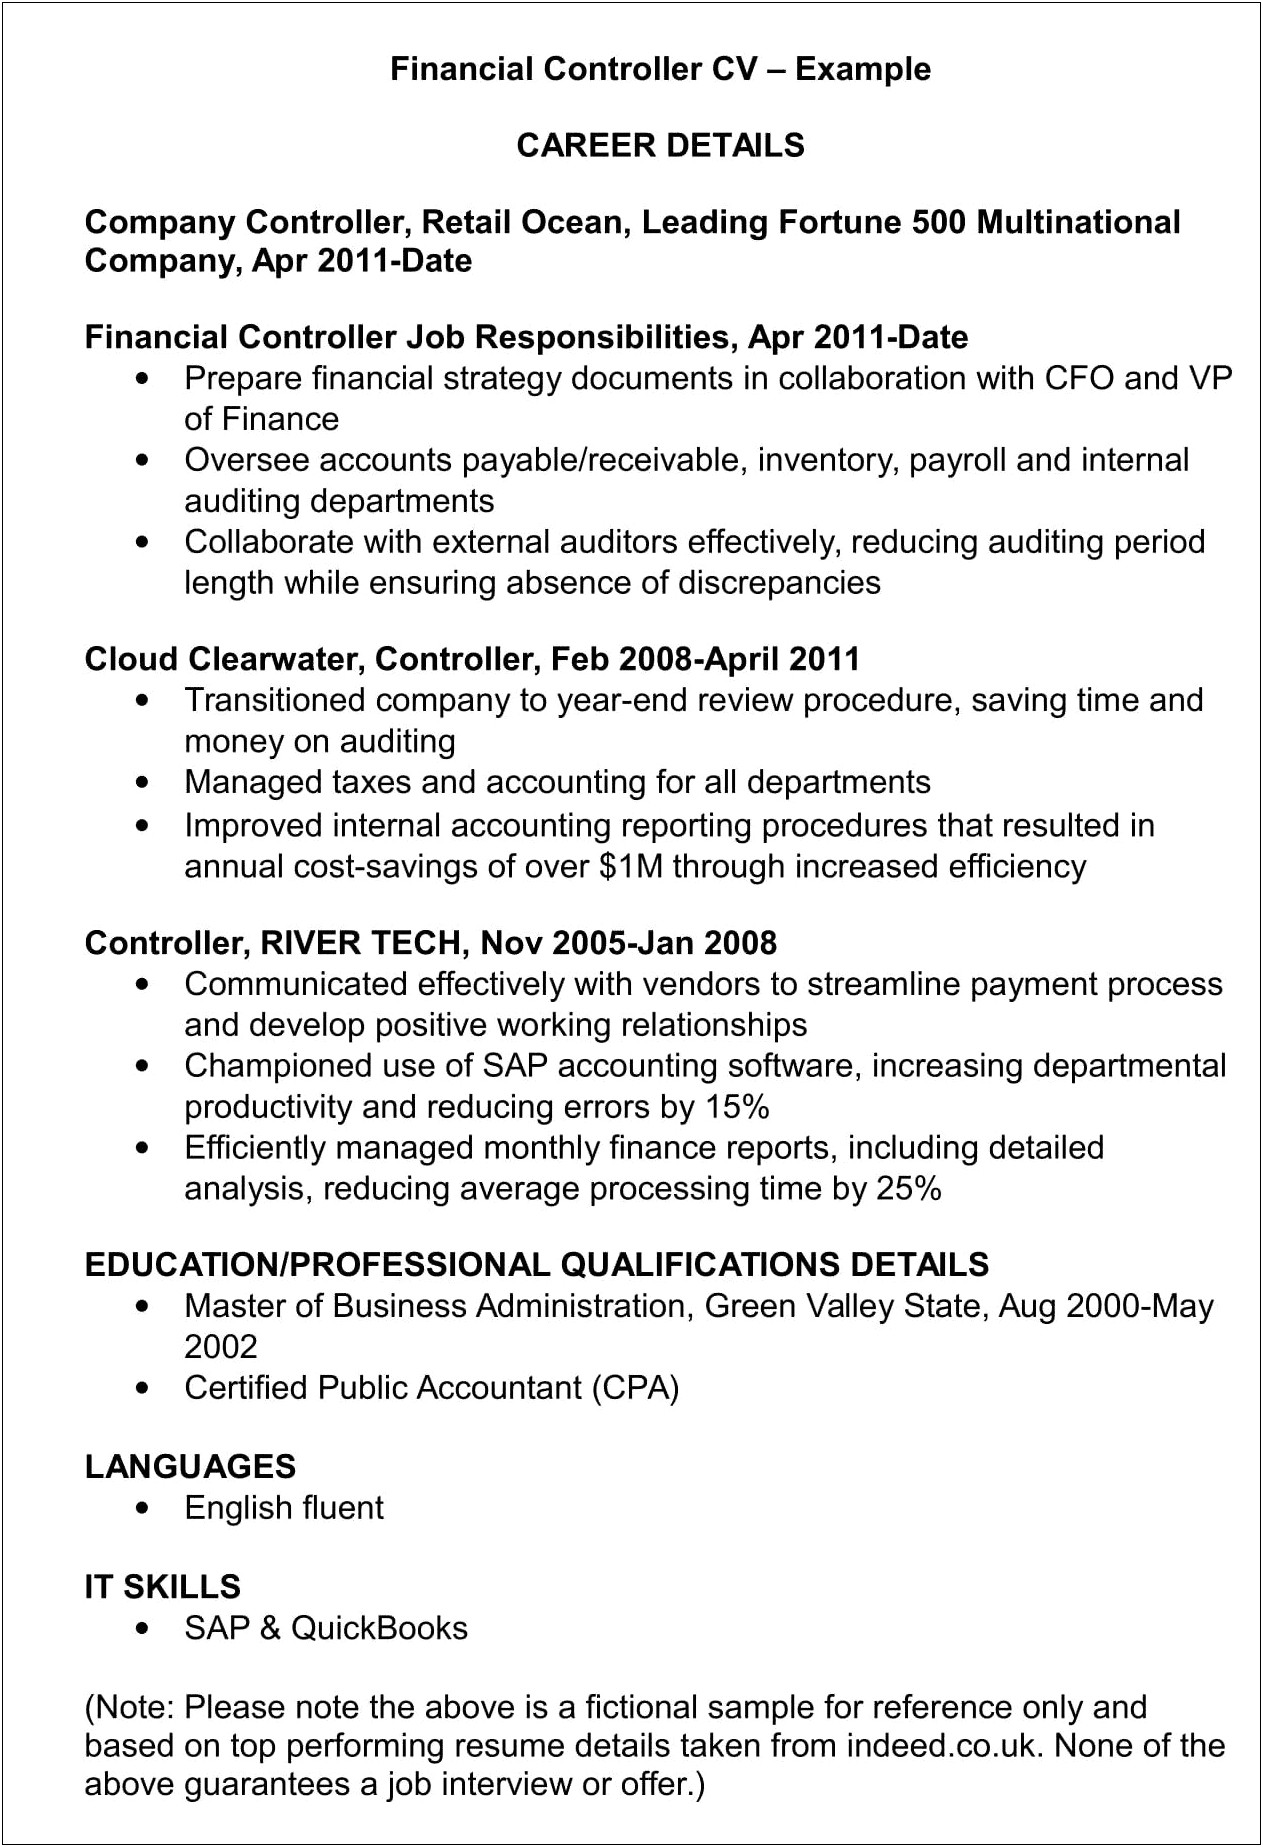 Sample Resume For Payroll Job